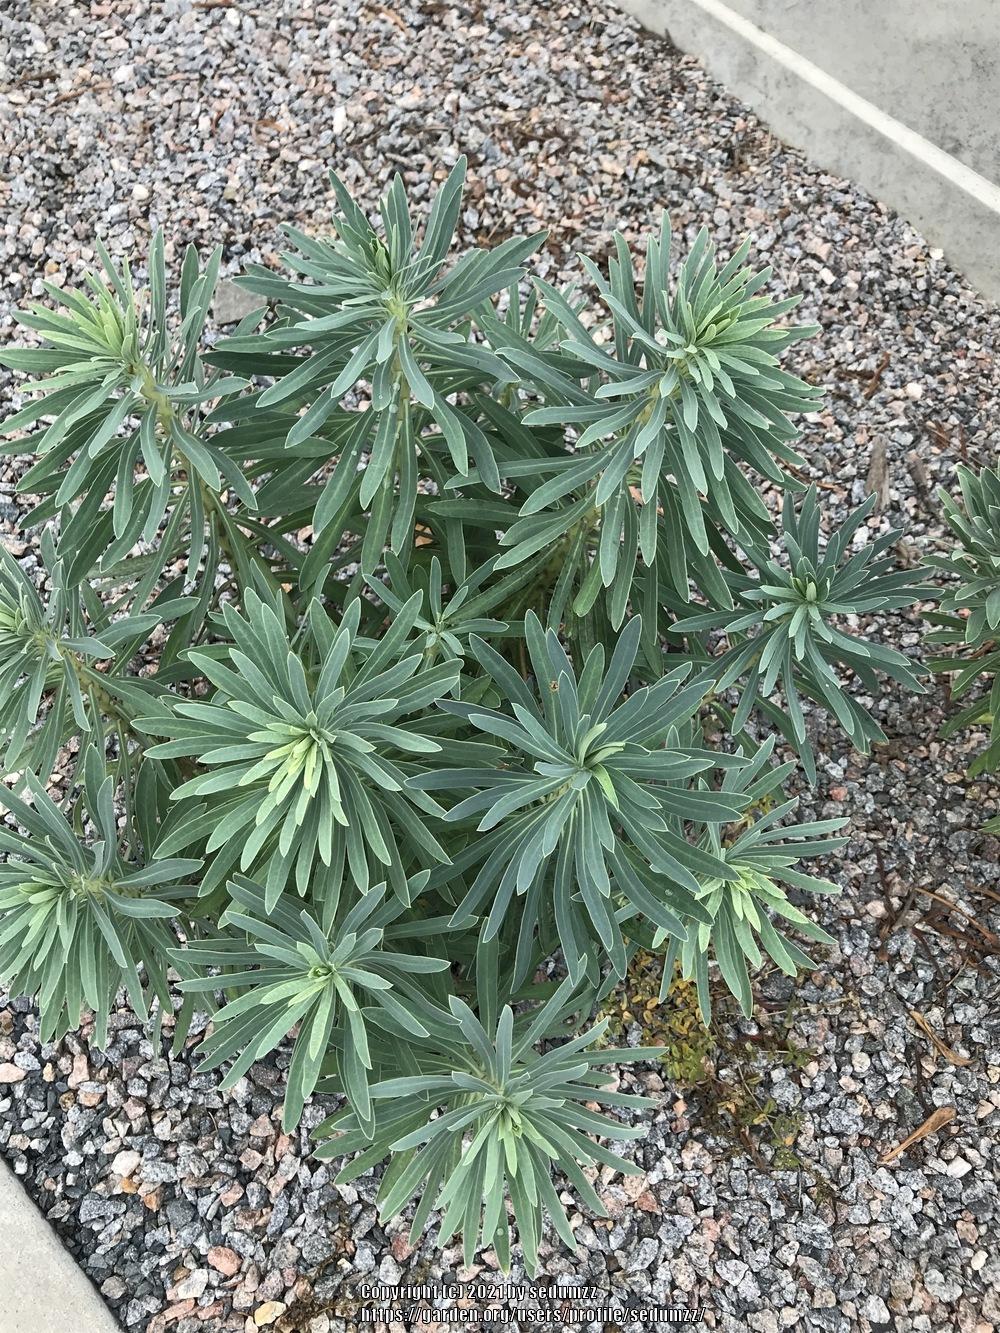 Photo of Euphorbias (Euphorbia) uploaded by sedumzz